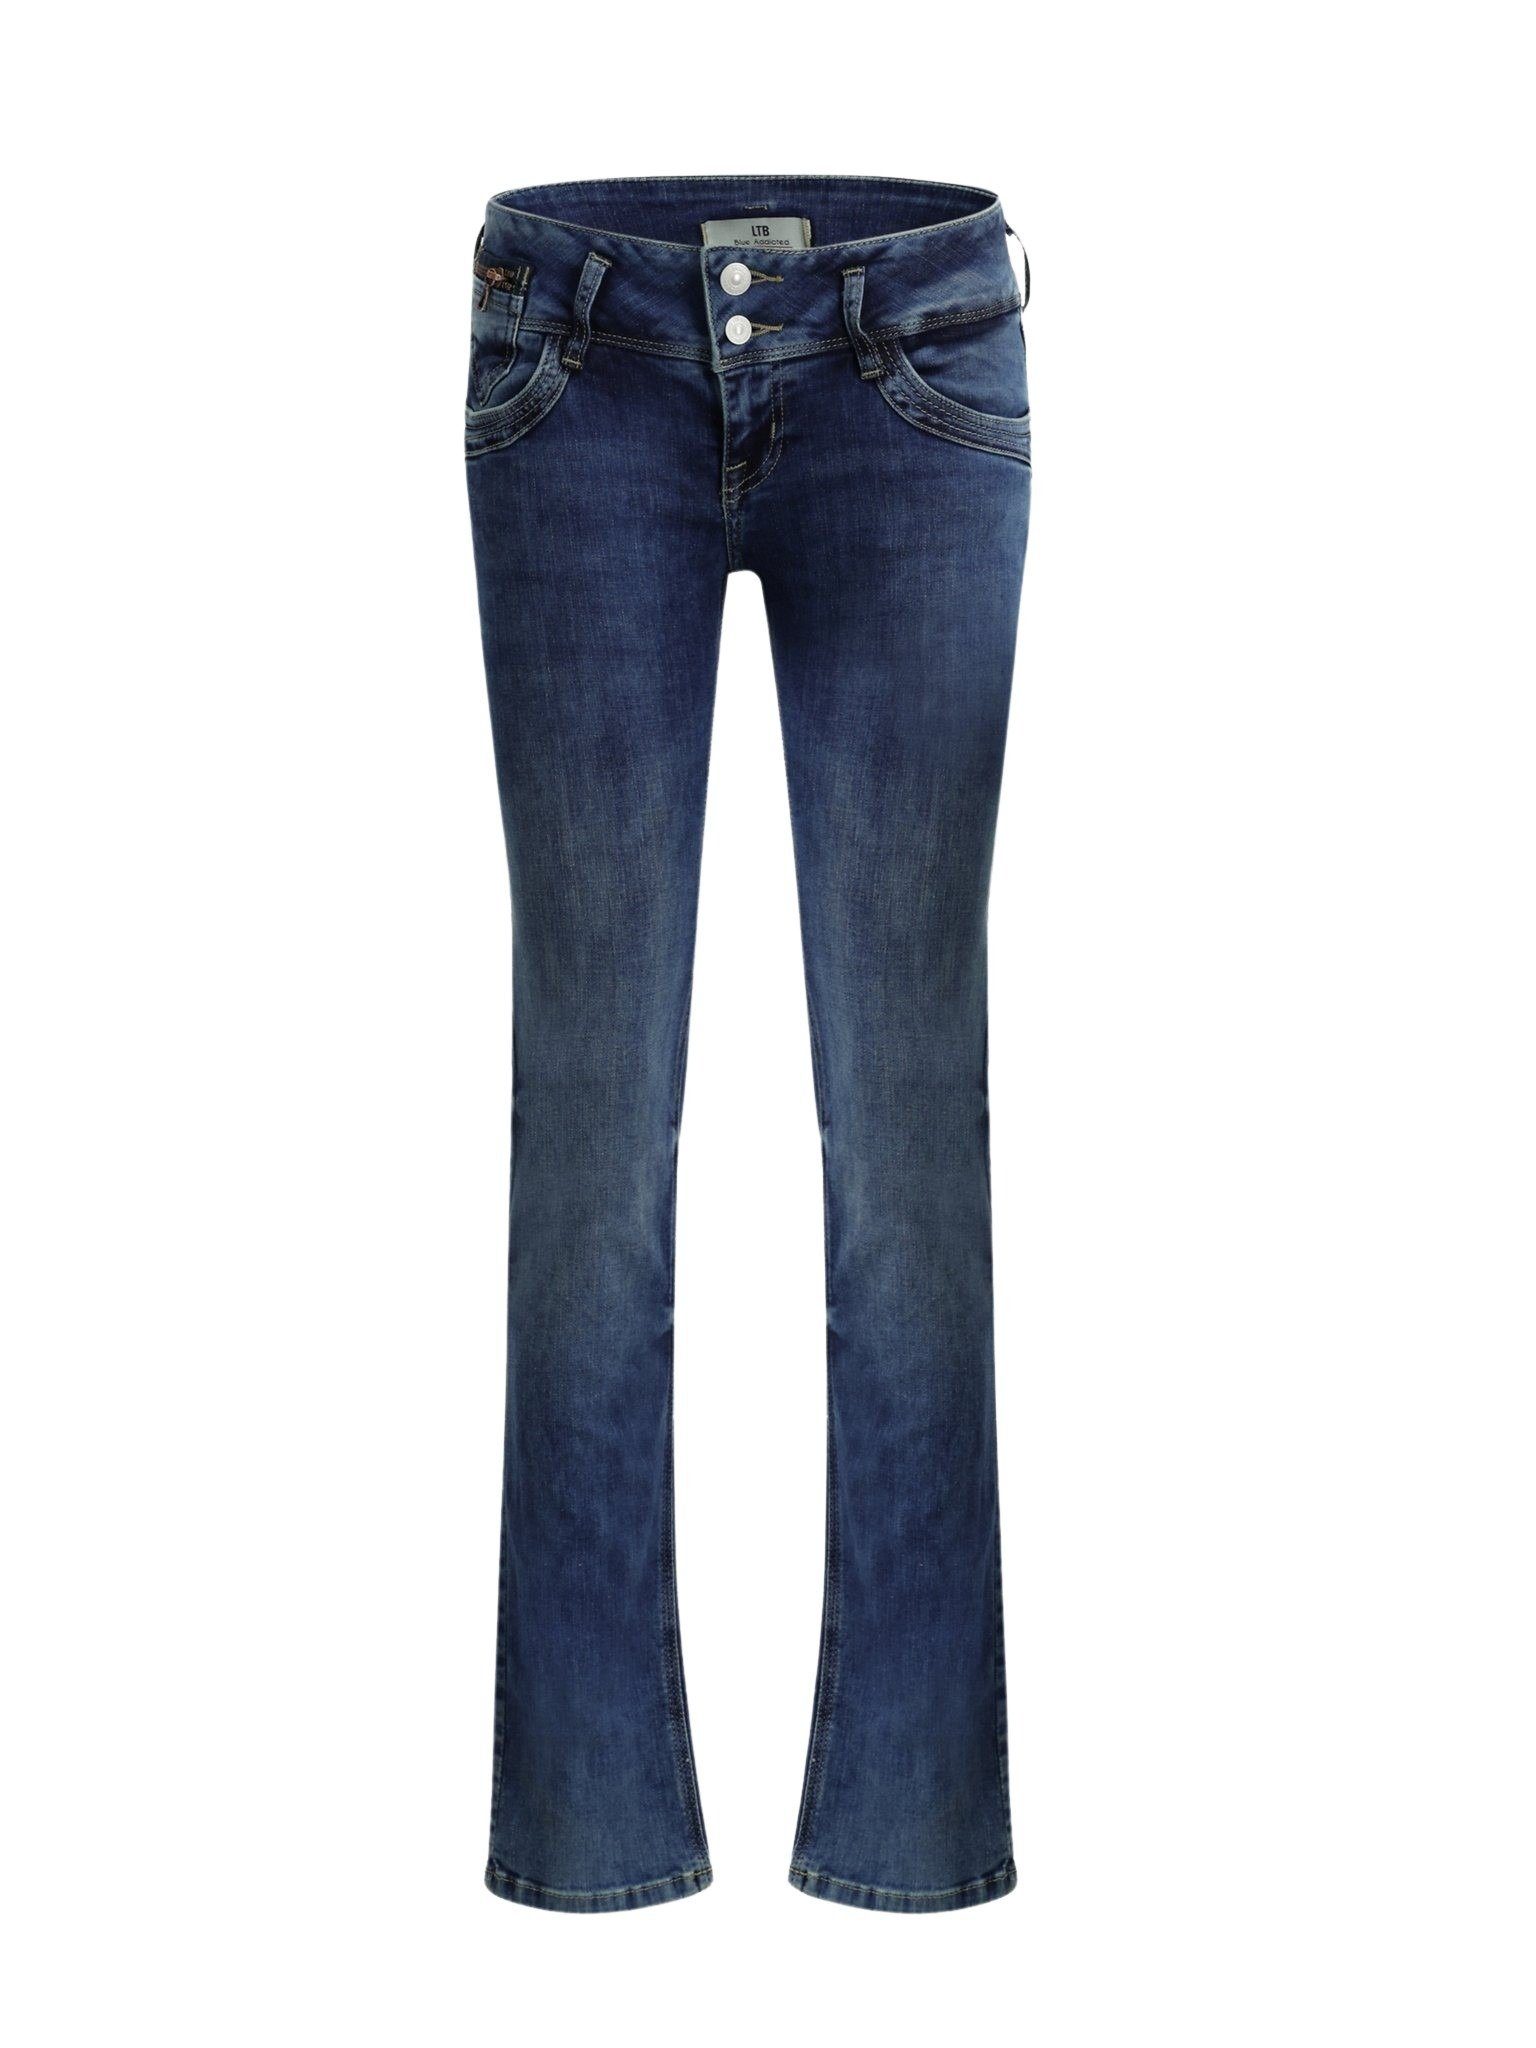 LTB Slim-fit-Jeans LTB Jonquil Blue Lapis Wash Jeans | Slim-Fit Jeans